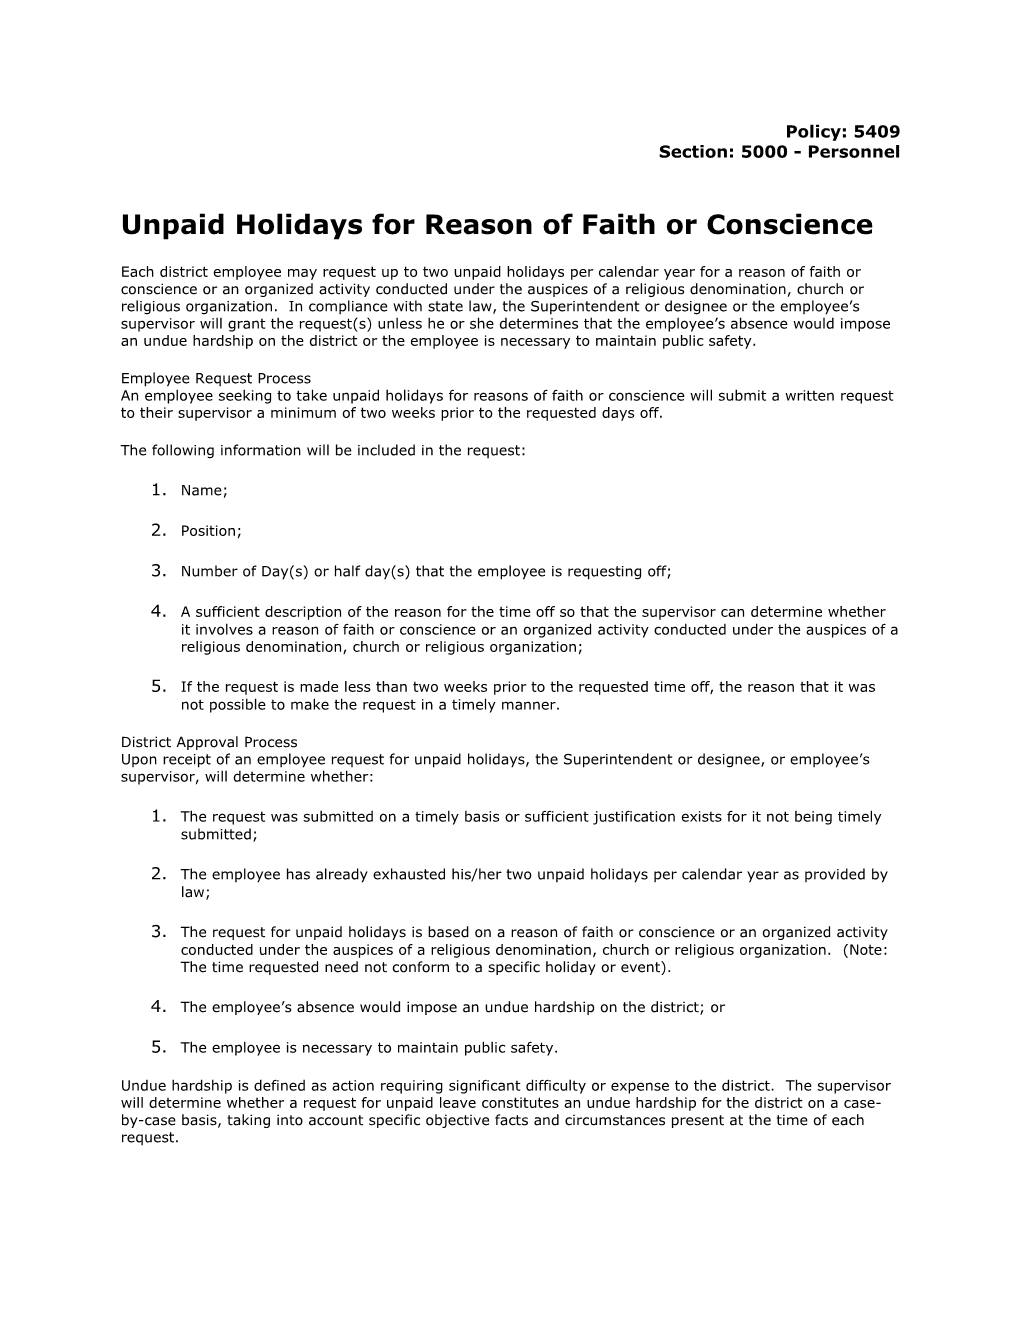 Unpaid Holidays for Reason of Faith Or Conscience